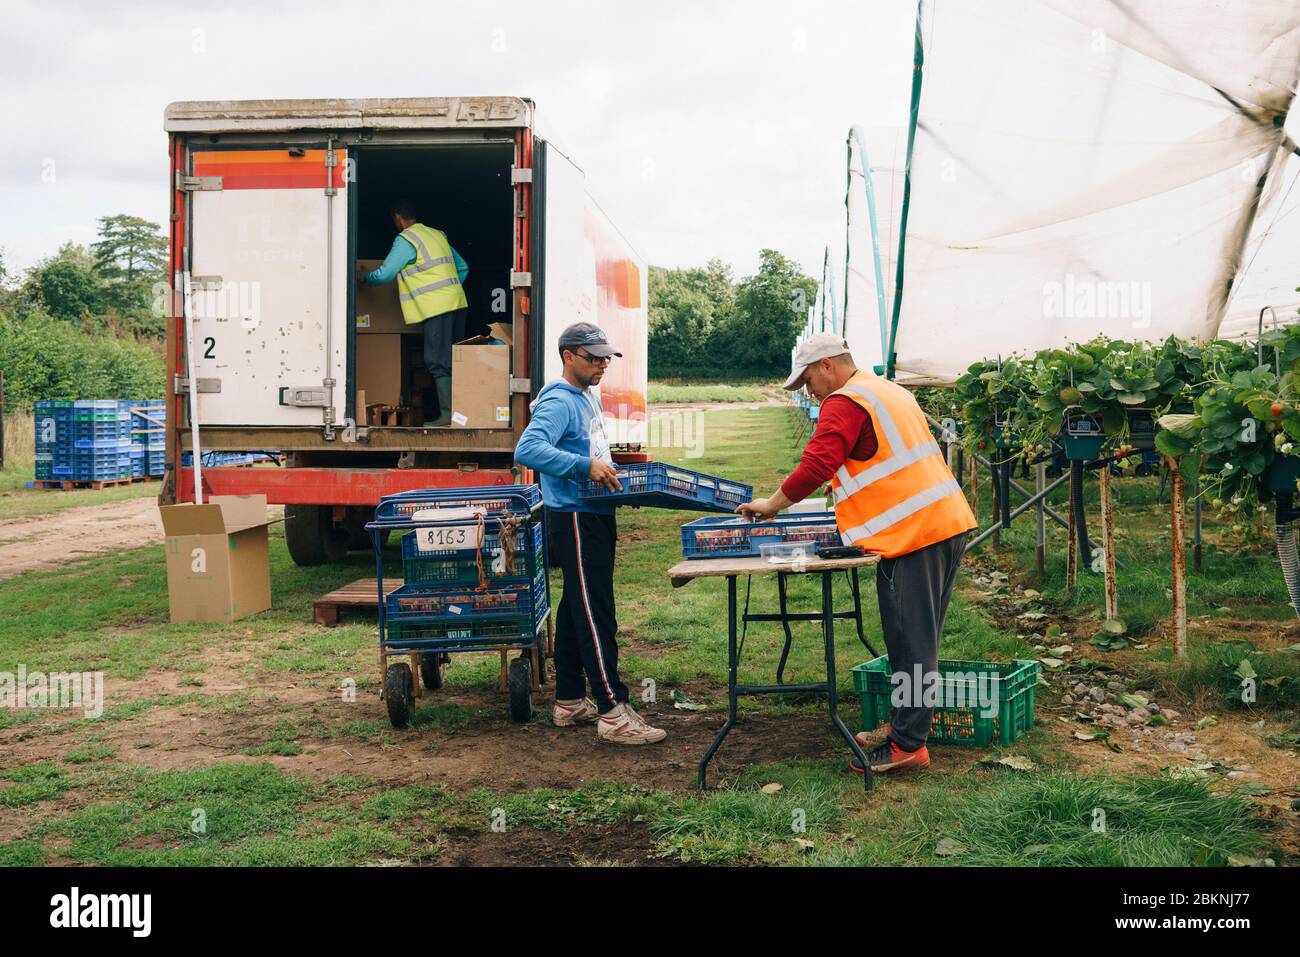 Les travailleurs migrants européens cueillez des fraises dans une grande ferme commerciale qui approvisionne les supermarchés britanniques. Banque D'Images